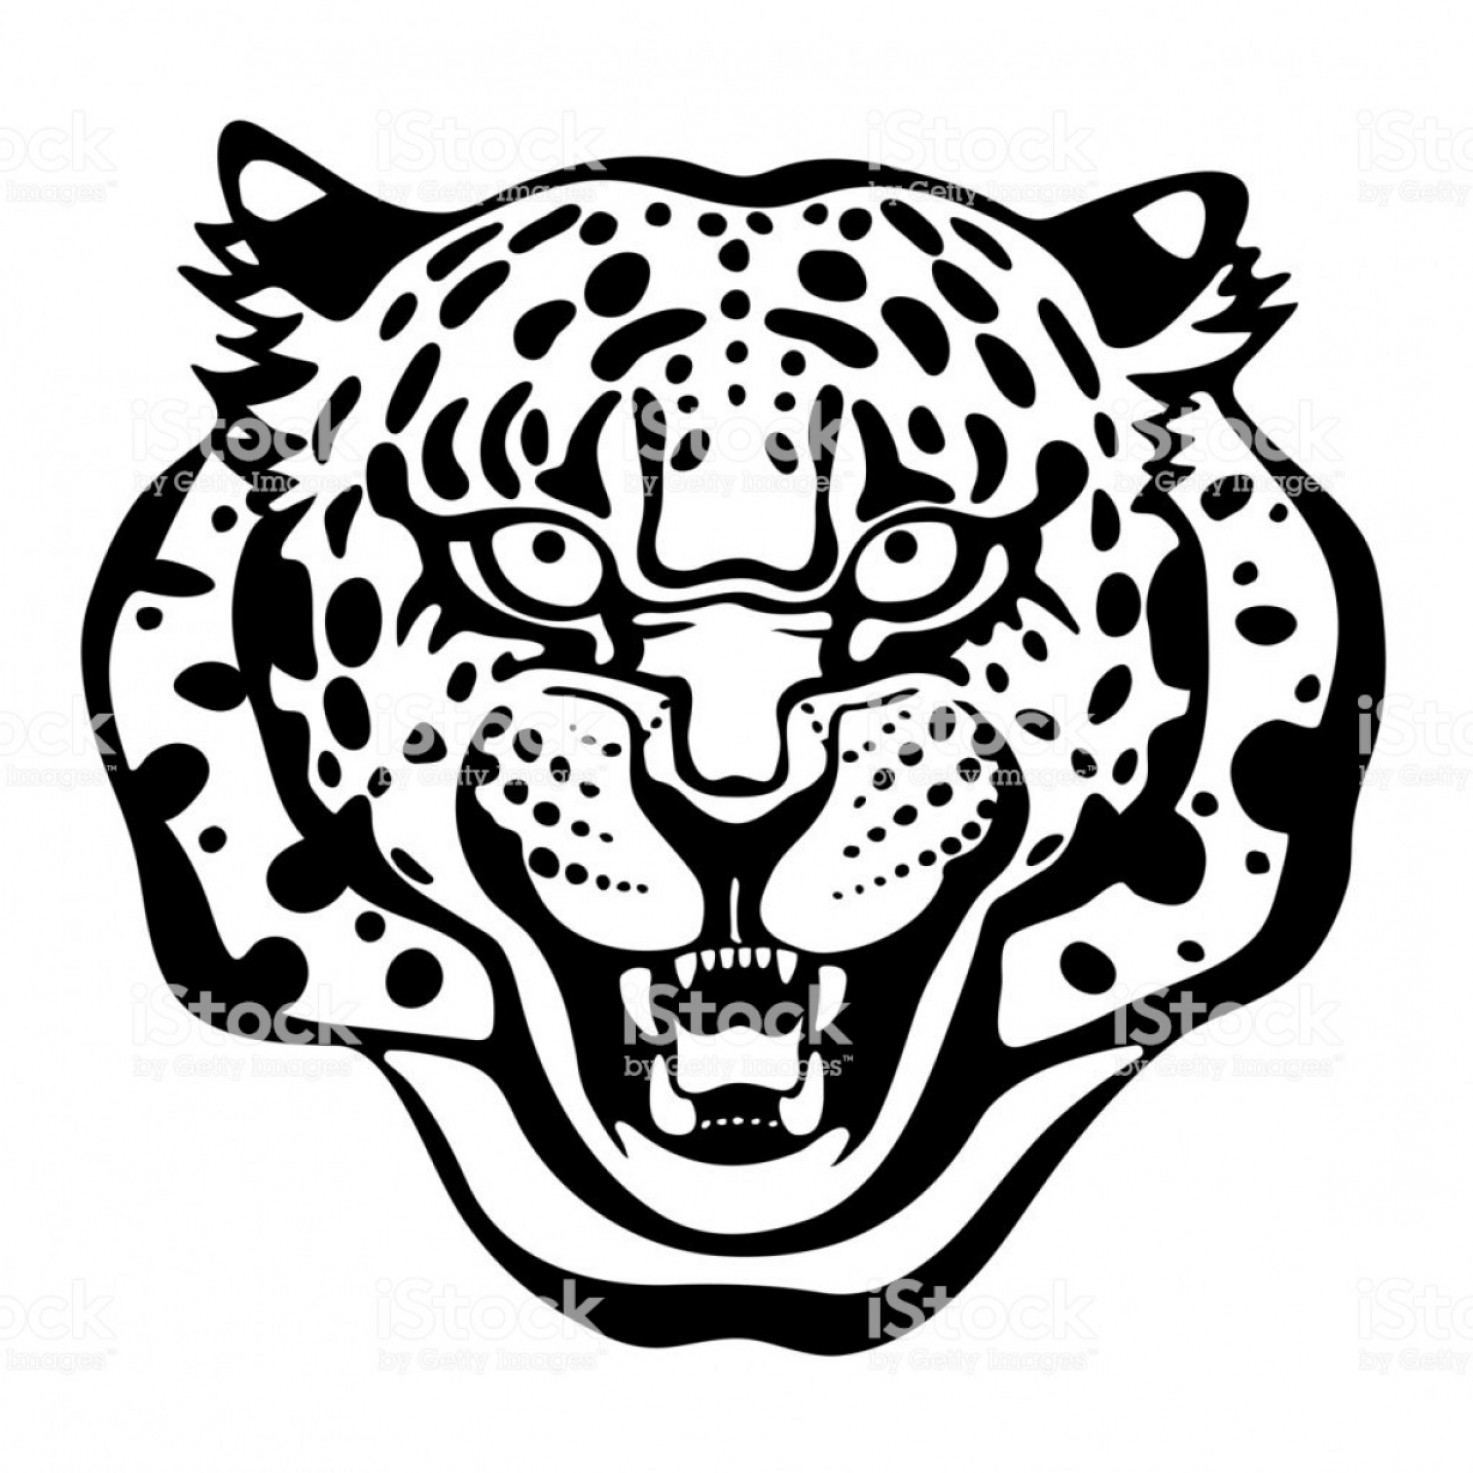 137 Cheetah vector images at Vectorified.com